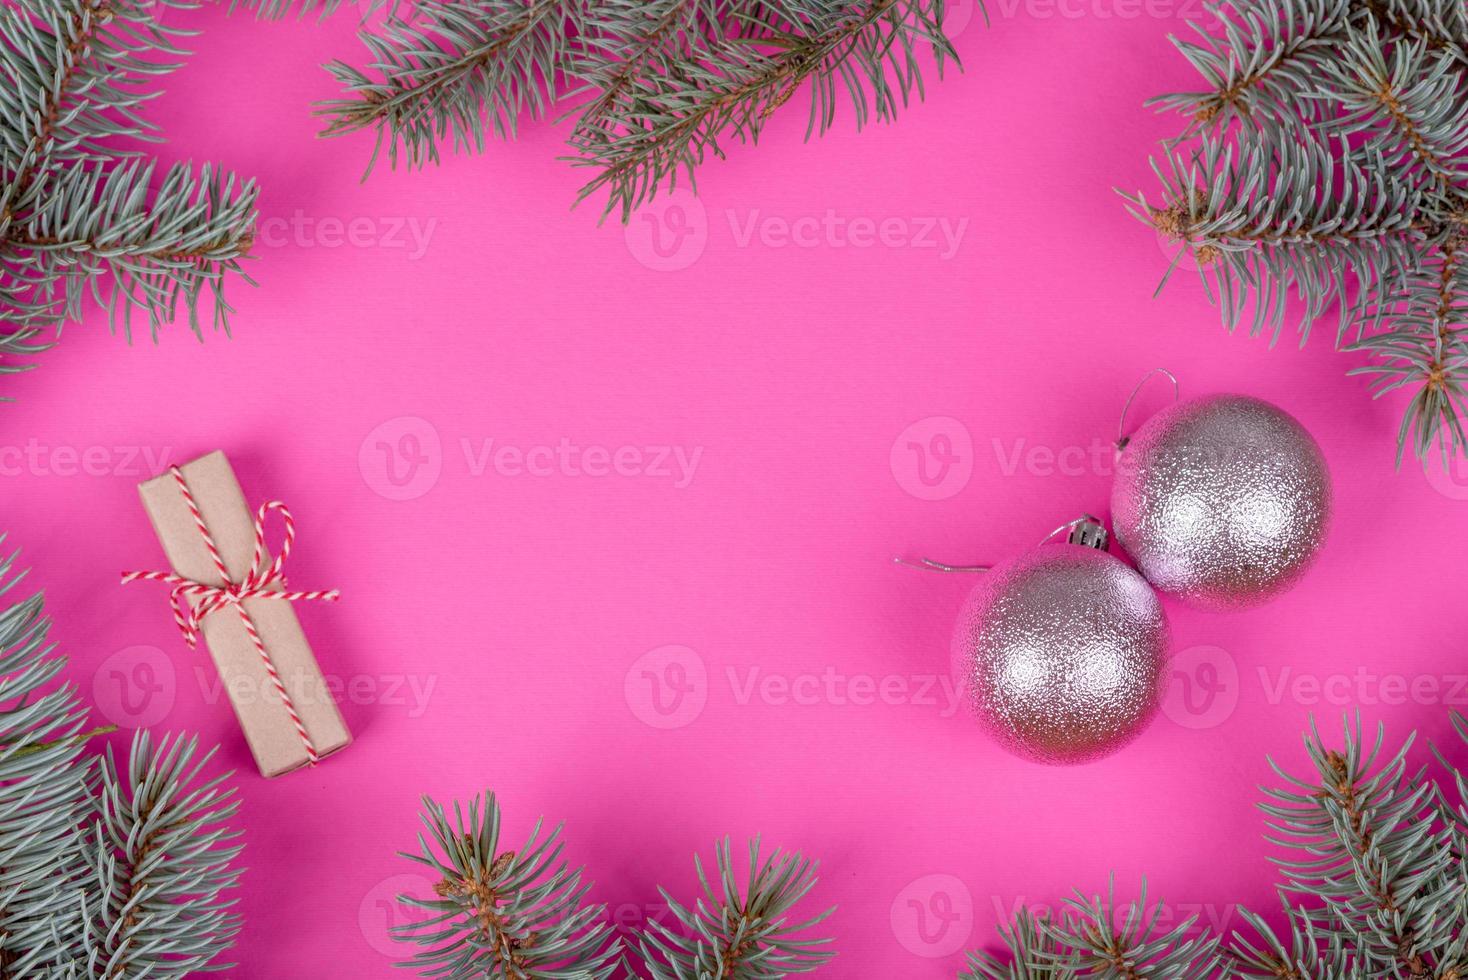 kerst felgekleurde decoratieve achtergrond foto